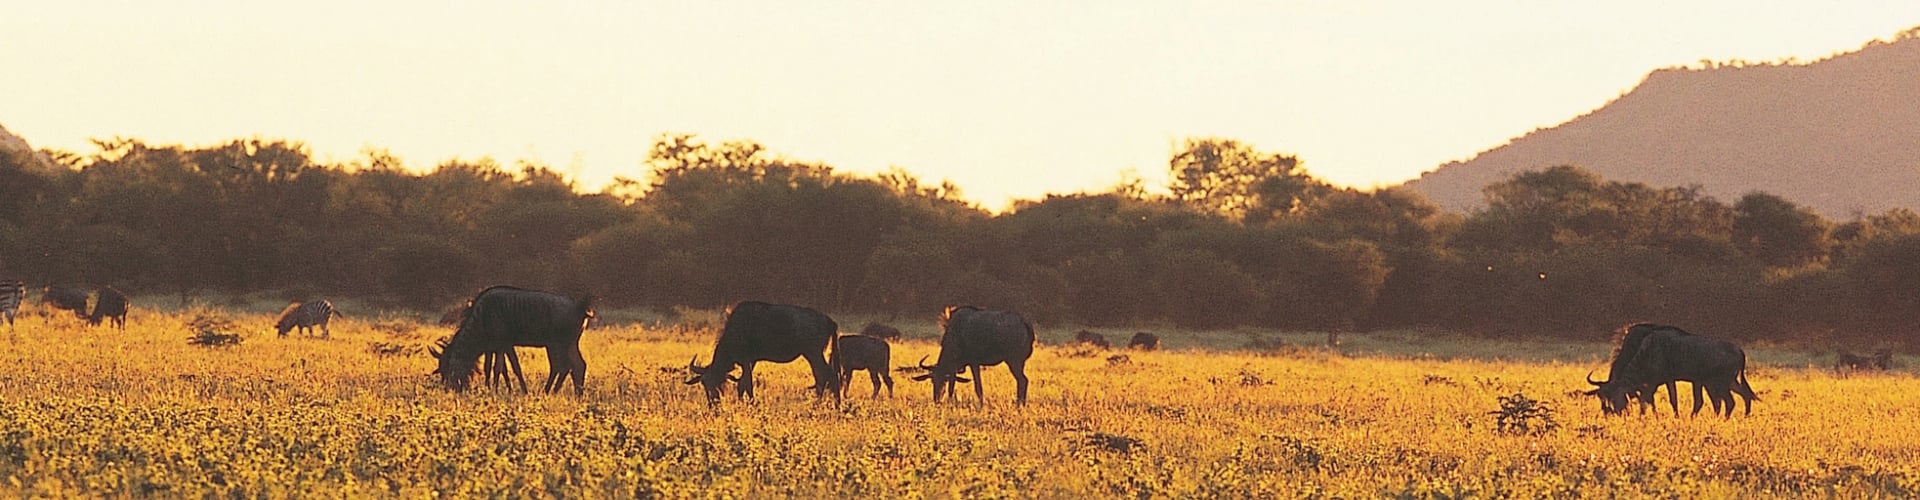 jacis-safari-lodge-madikwe-private-game-reserve-zuid-afrika-header